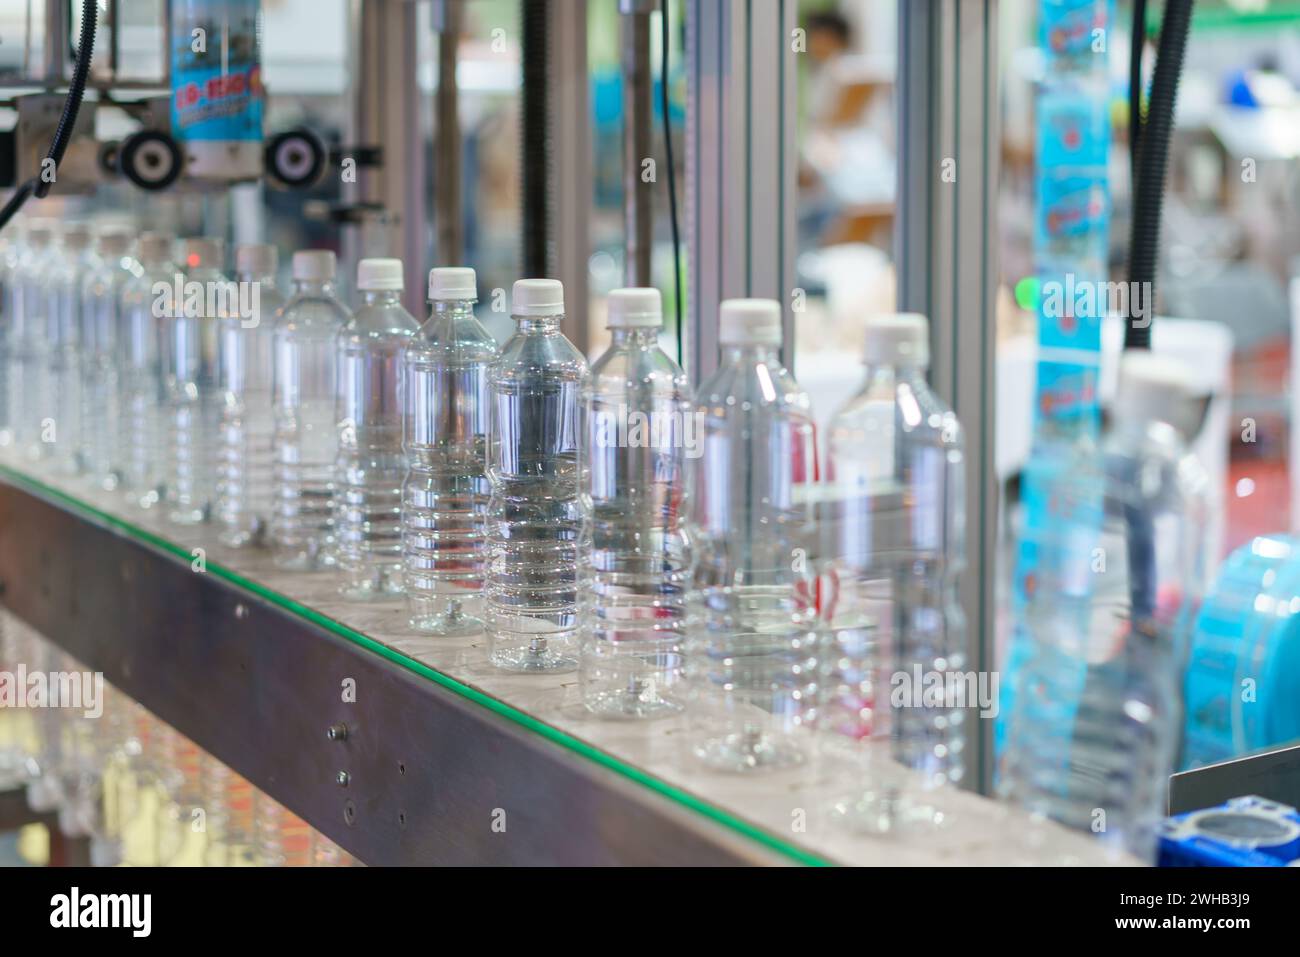 Immagine che mostra una fila di bottiglie d'acqua in plastica trasparente su un nastro trasportatore in un impianto di imbottigliamento, con particolare attenzione alle bottiglie e ai macchinari industriali i. Foto Stock